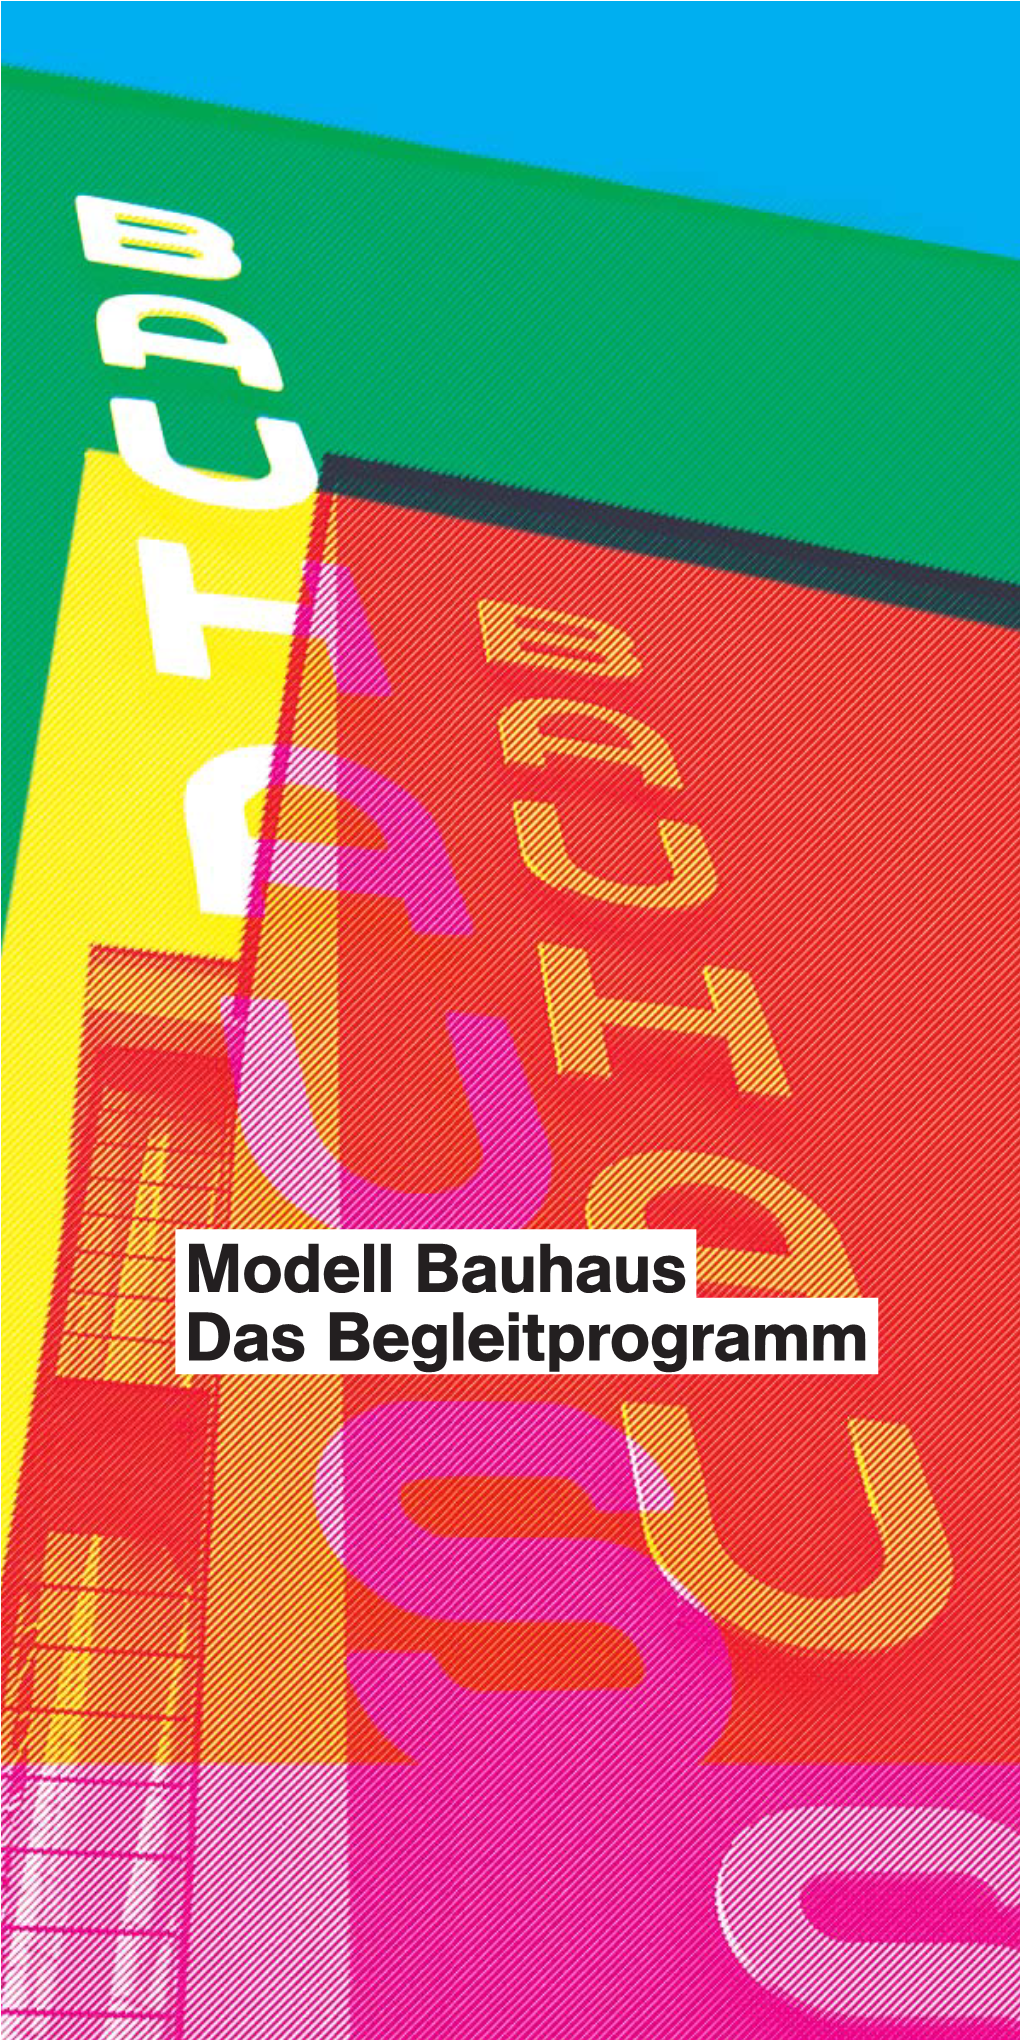 Modell Bauhaus Das Begleitprogramm Modell Bauhaus Das Begleitprogramm